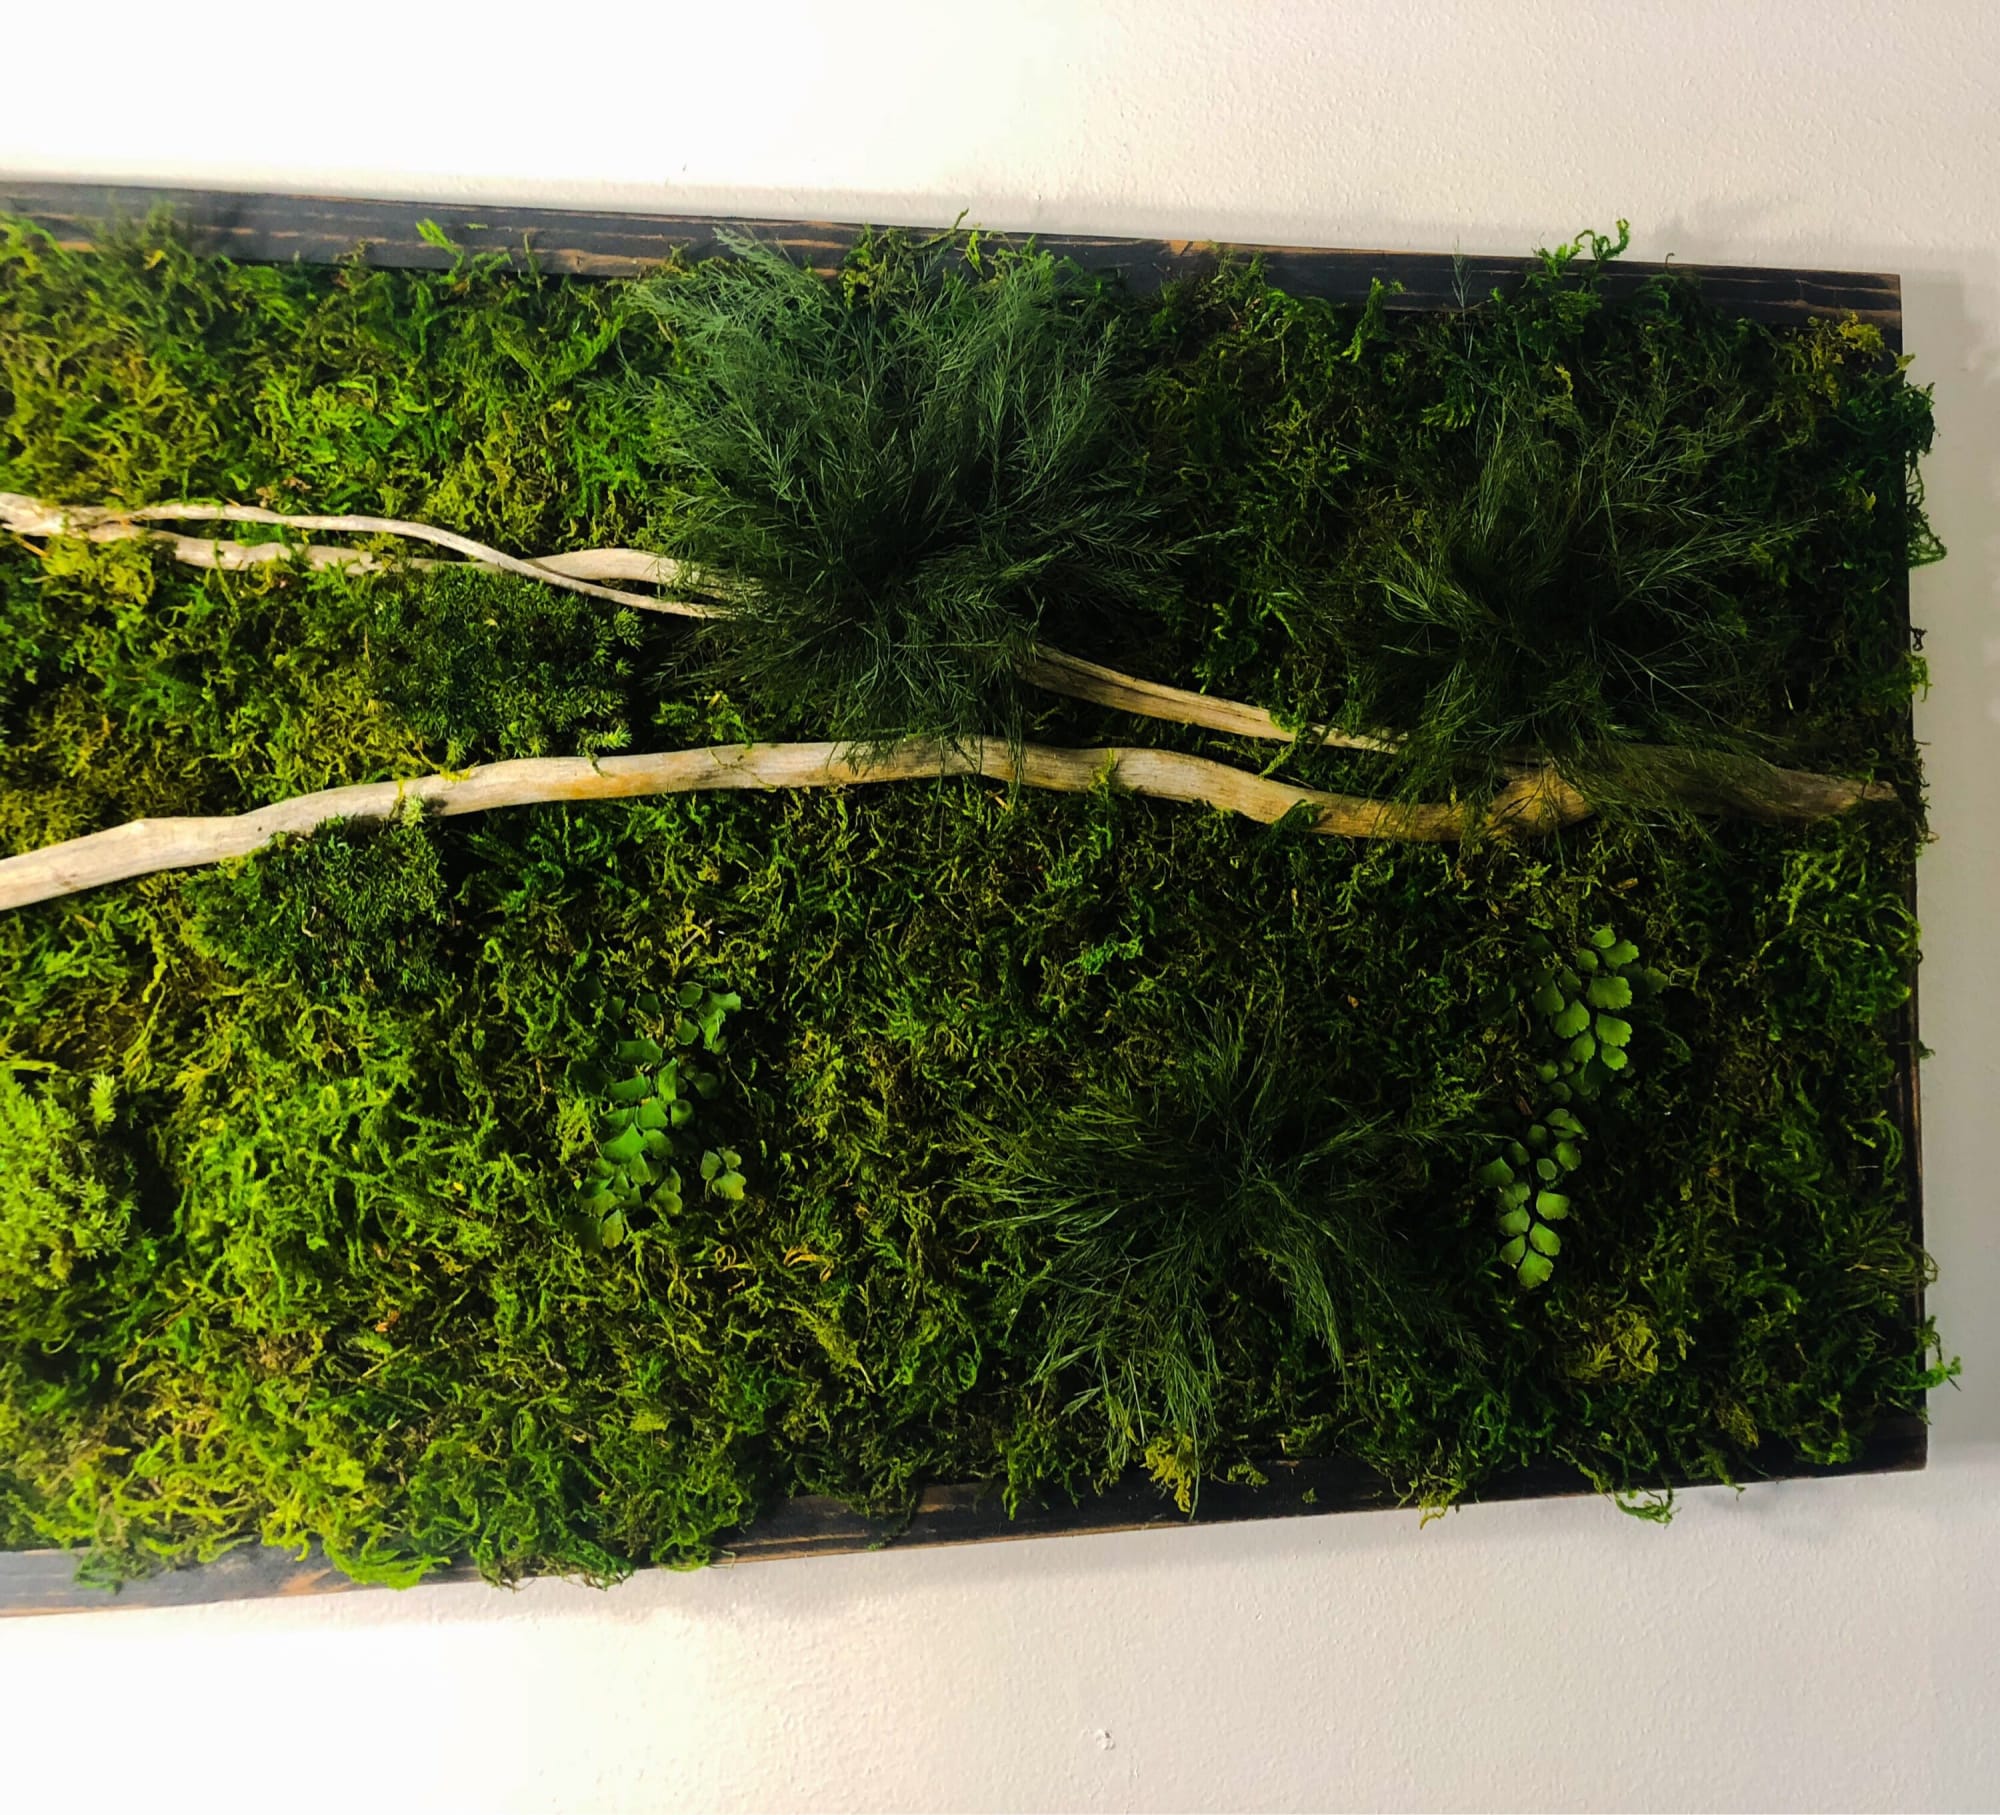 Framed Moss Wall Art Set Botanical Living Walls Sculpture by Sarah  Montgomery